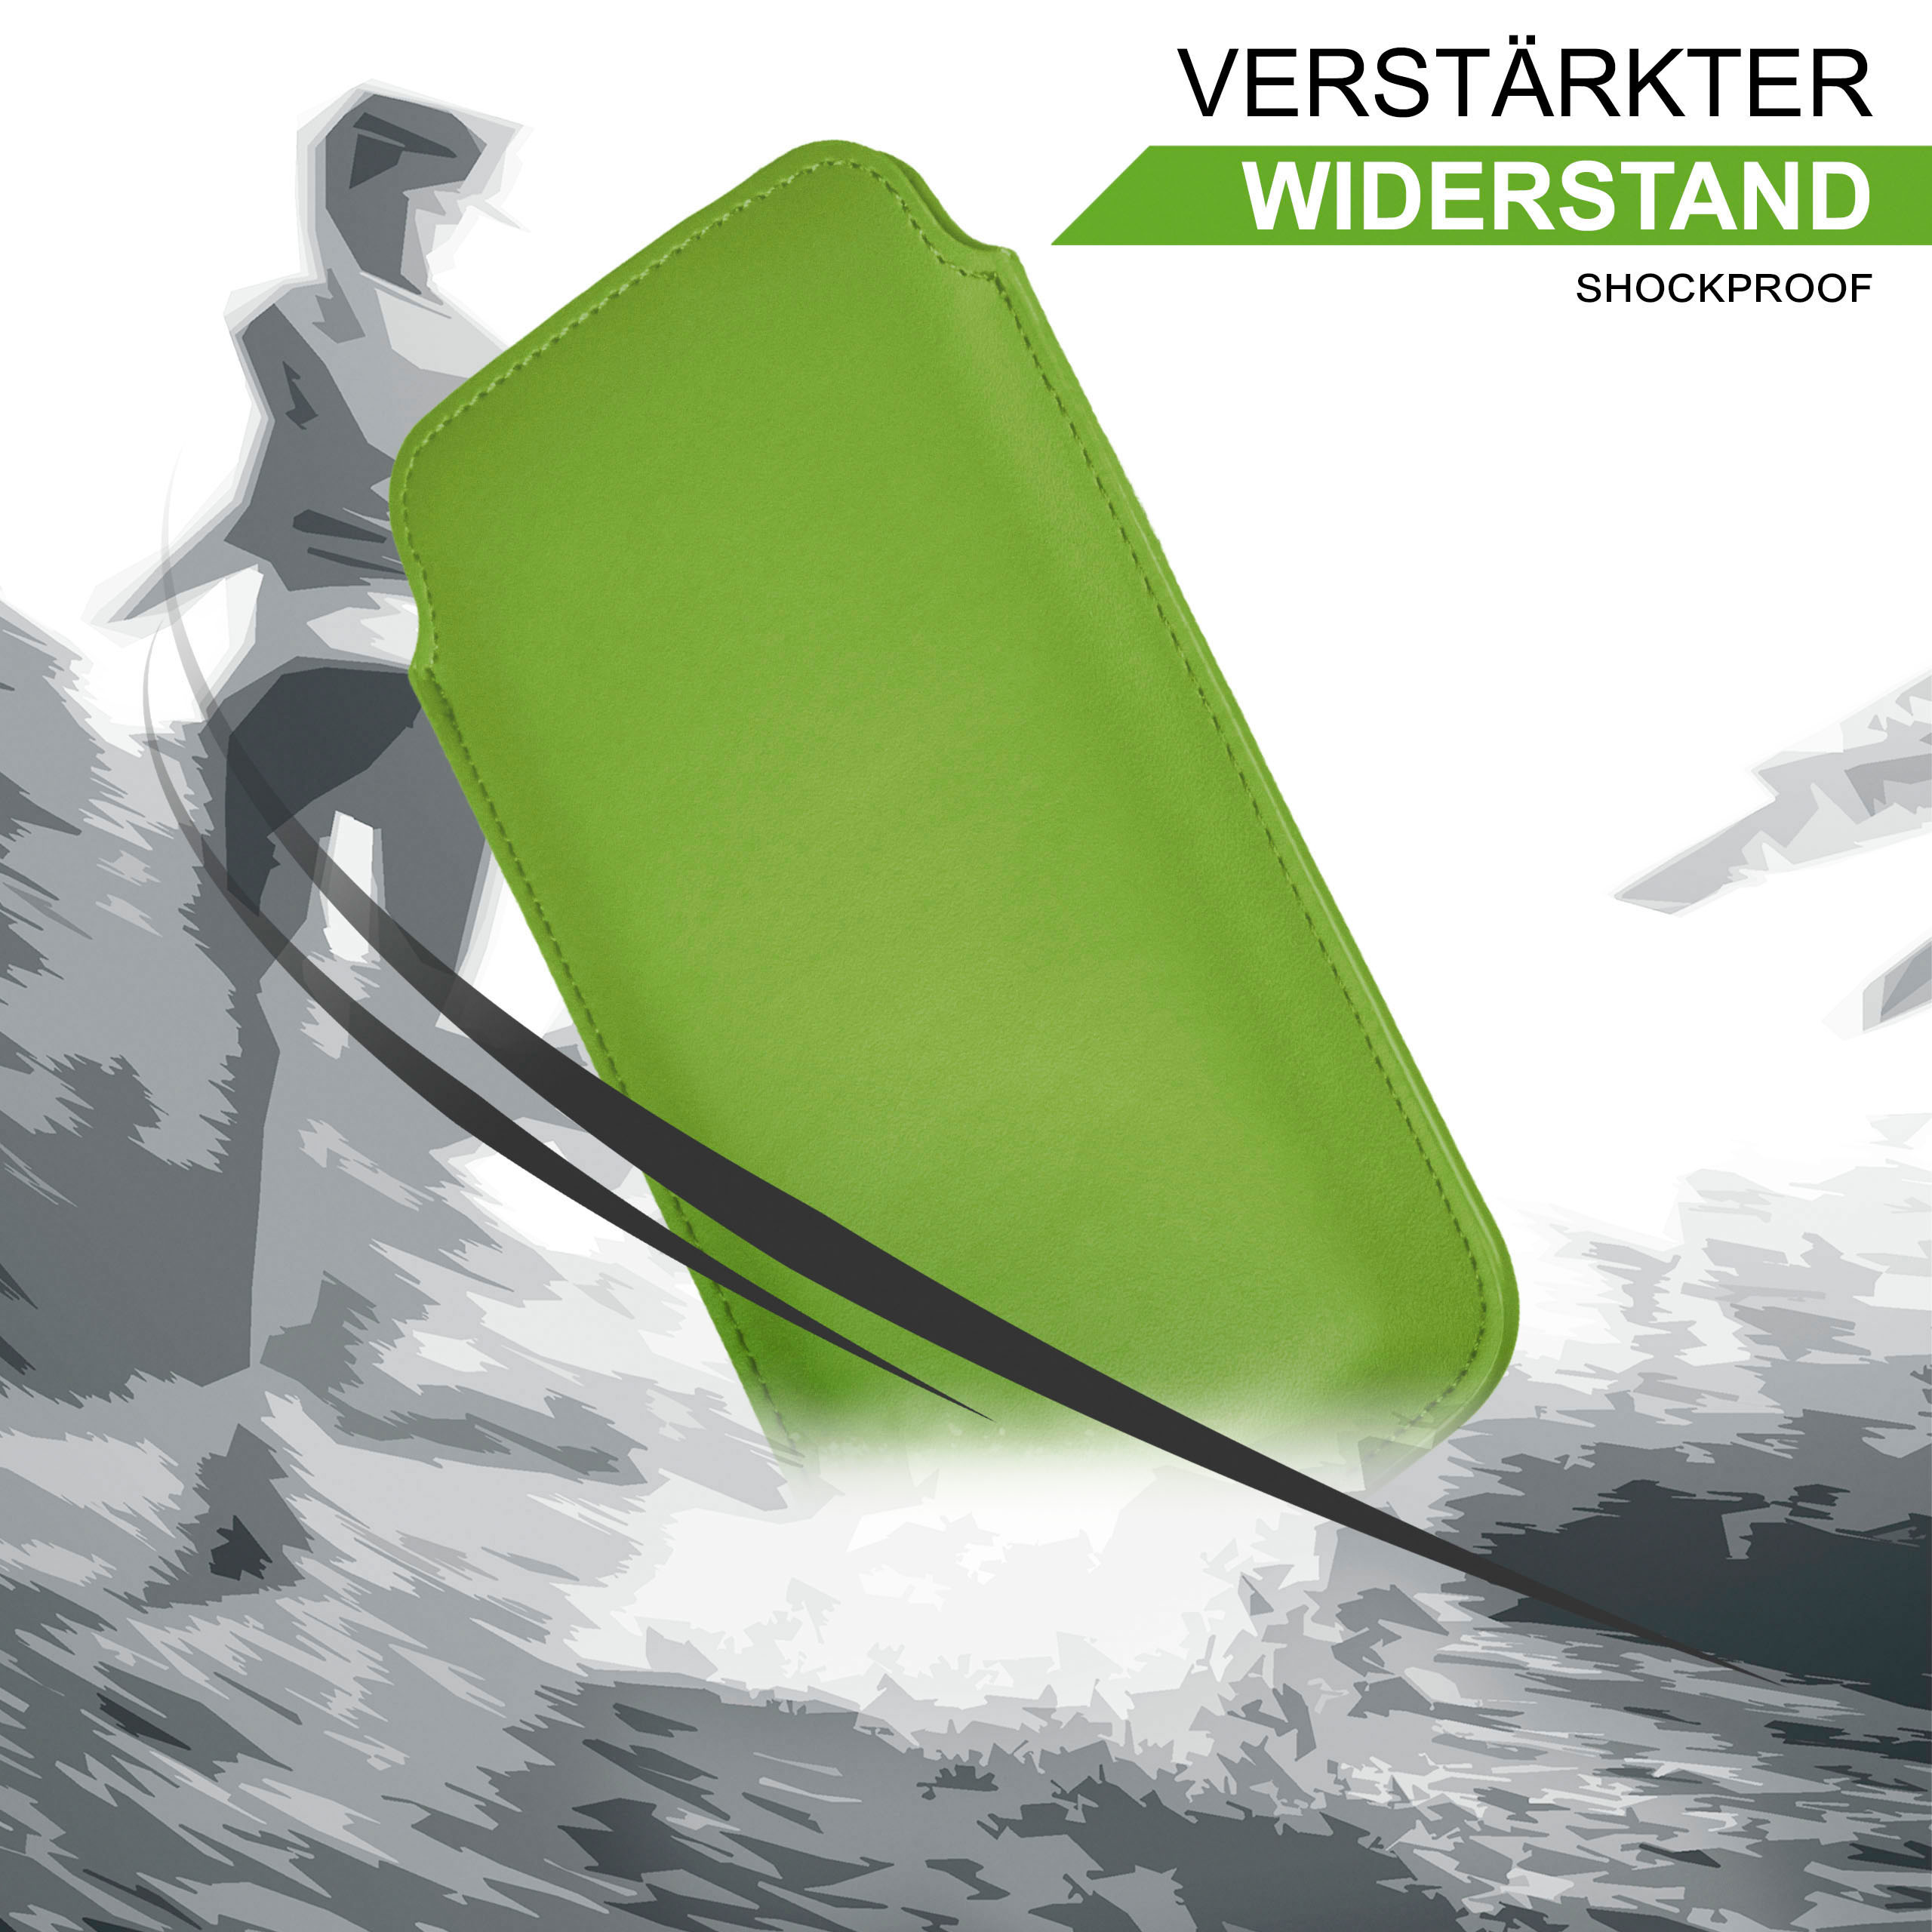 MOEX Slide Case, Full Basic, Cover, Lime-Green Flip Emporia